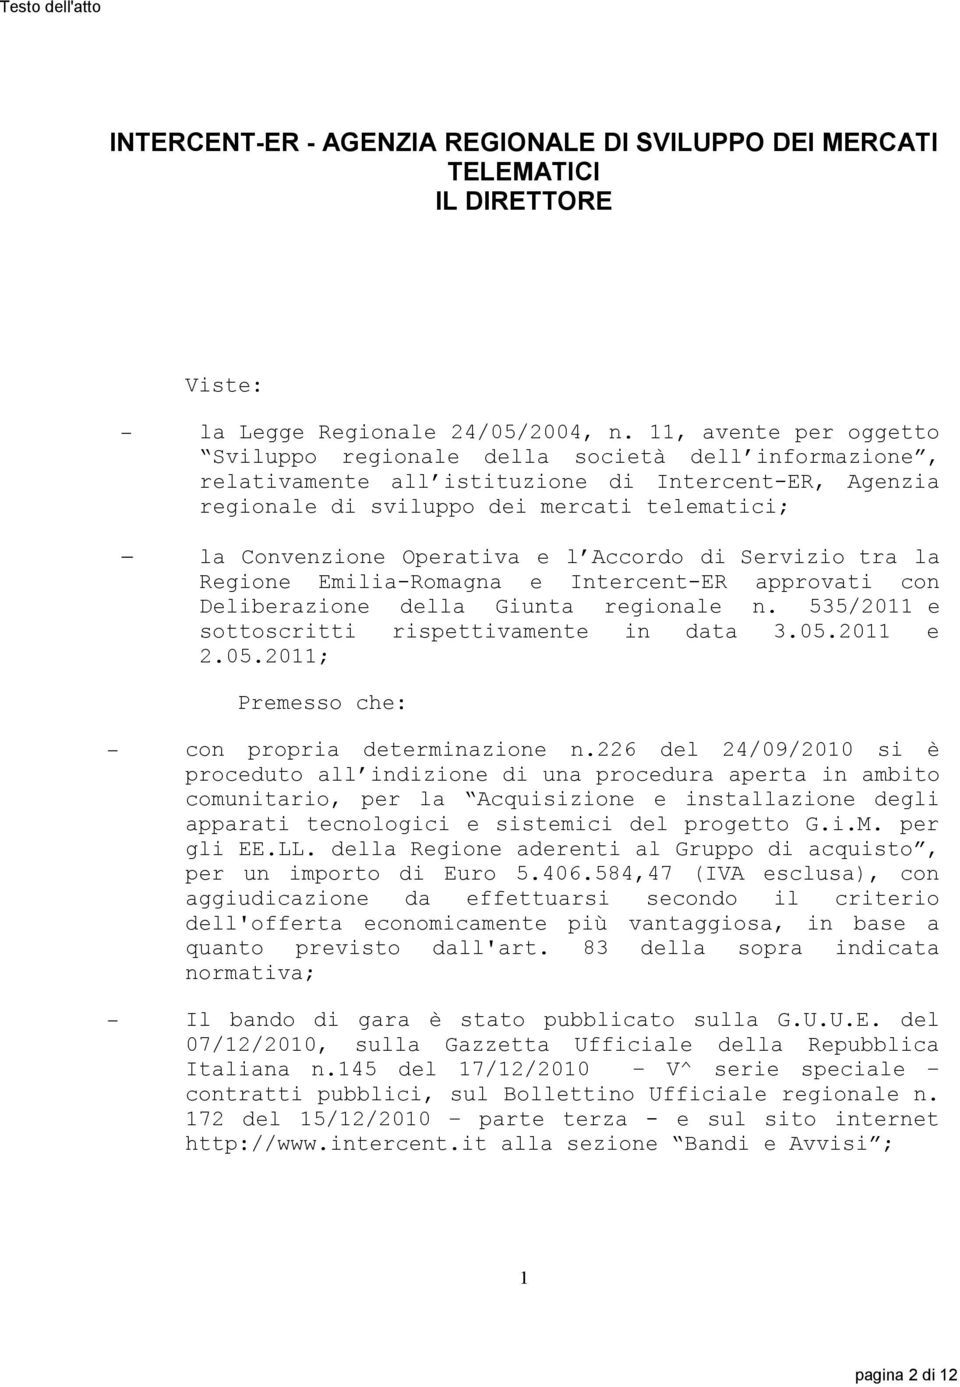 e l Accordo di Servizio tra la Regione Emilia-Romagna e Intercent-ER approvati con Deliberazione della Giunta regionale n. 55/20 e sottoscritti rispettivamente in data.05.